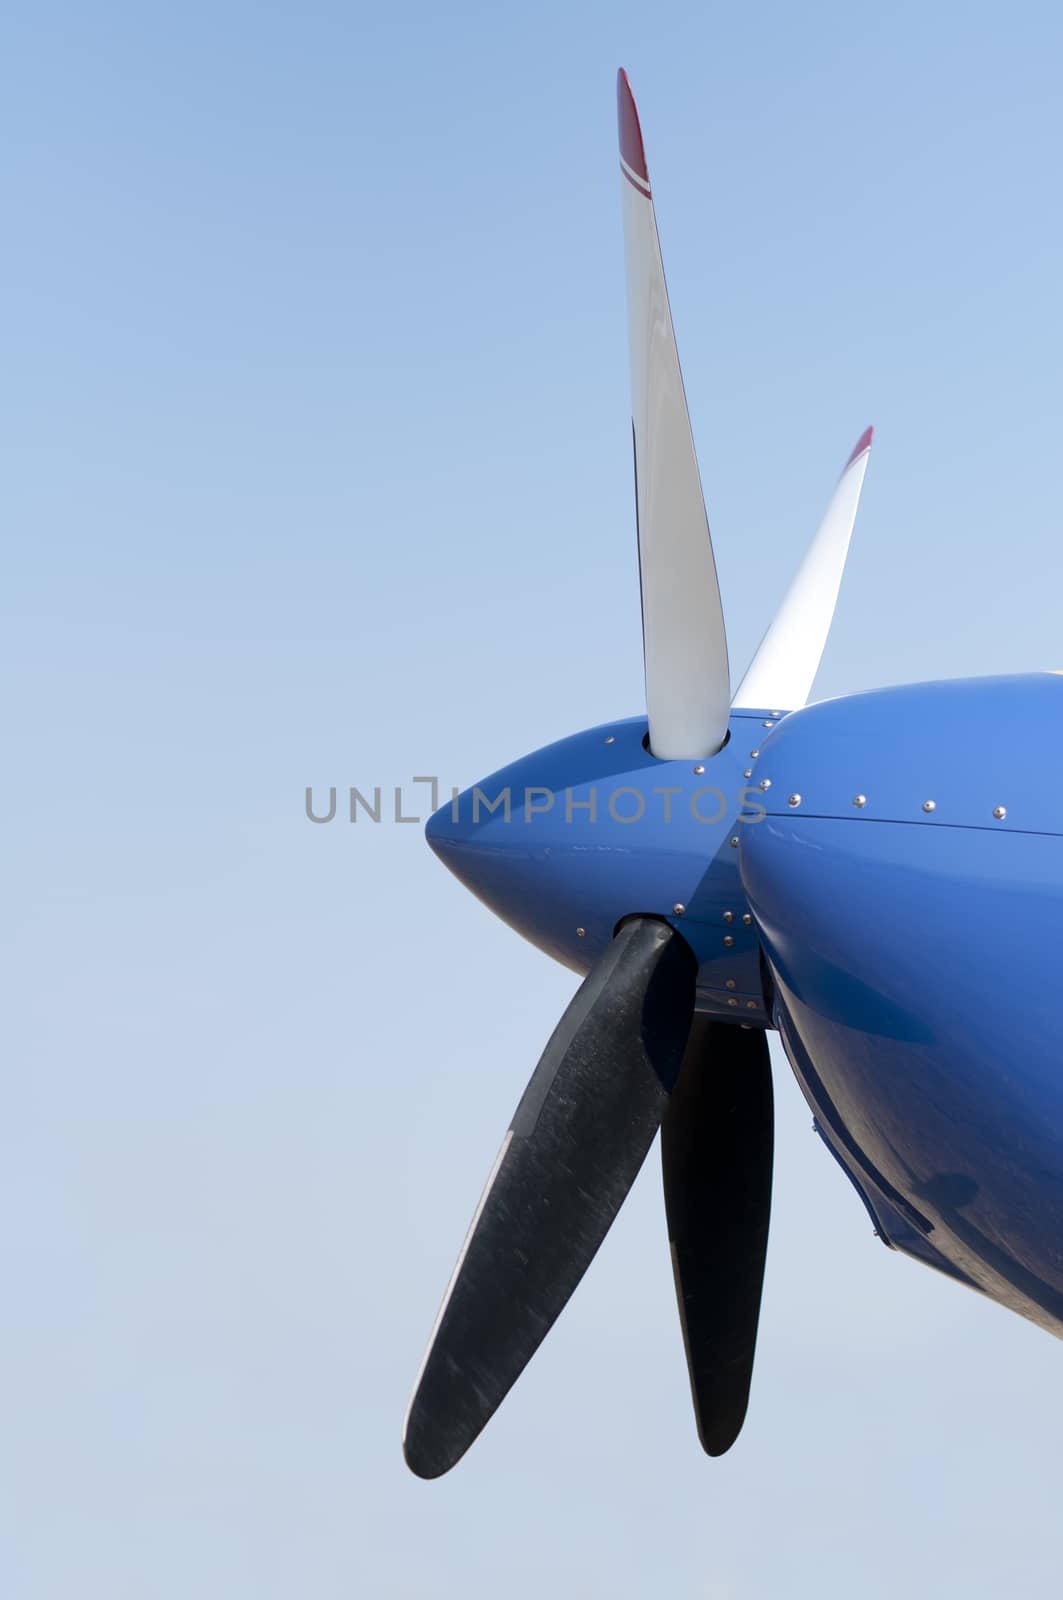 White plane propeller on blue sky background